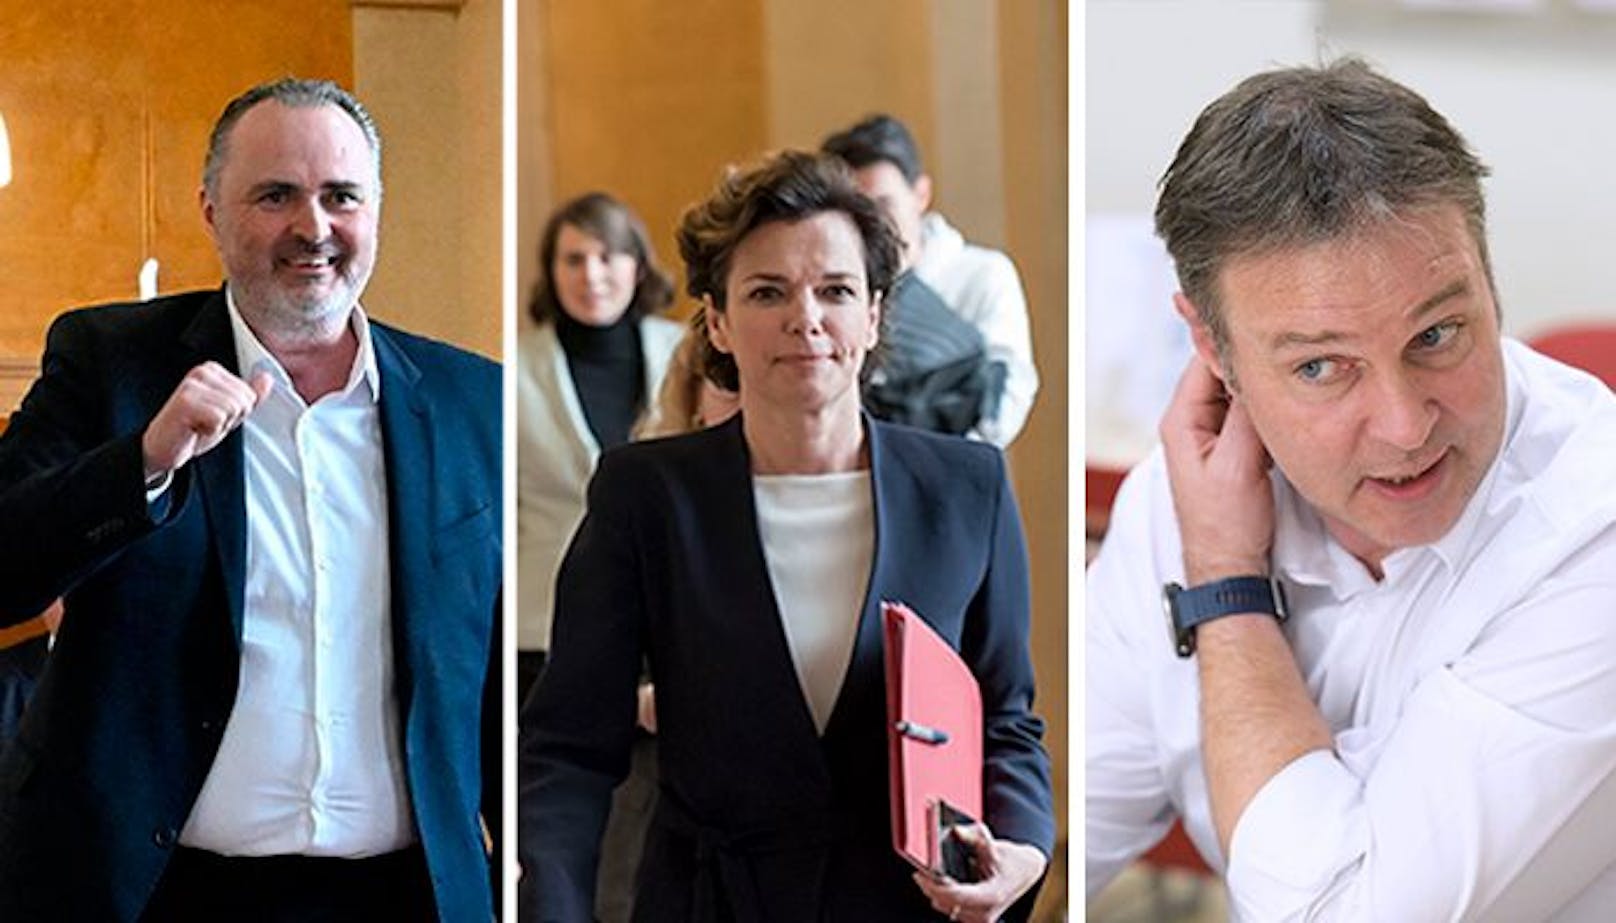 Im Rahmen einer Mitgliederbefragung gehen Hans Peter Doskozil, Pamela Rendi-Wagner und Andreas Babler ins Rennen um den SPÖ-Vorsitz. Ein Sonderparteitag am 3. Juni soll schließlich Klarheit in die Führungsfrage bringen.&nbsp;